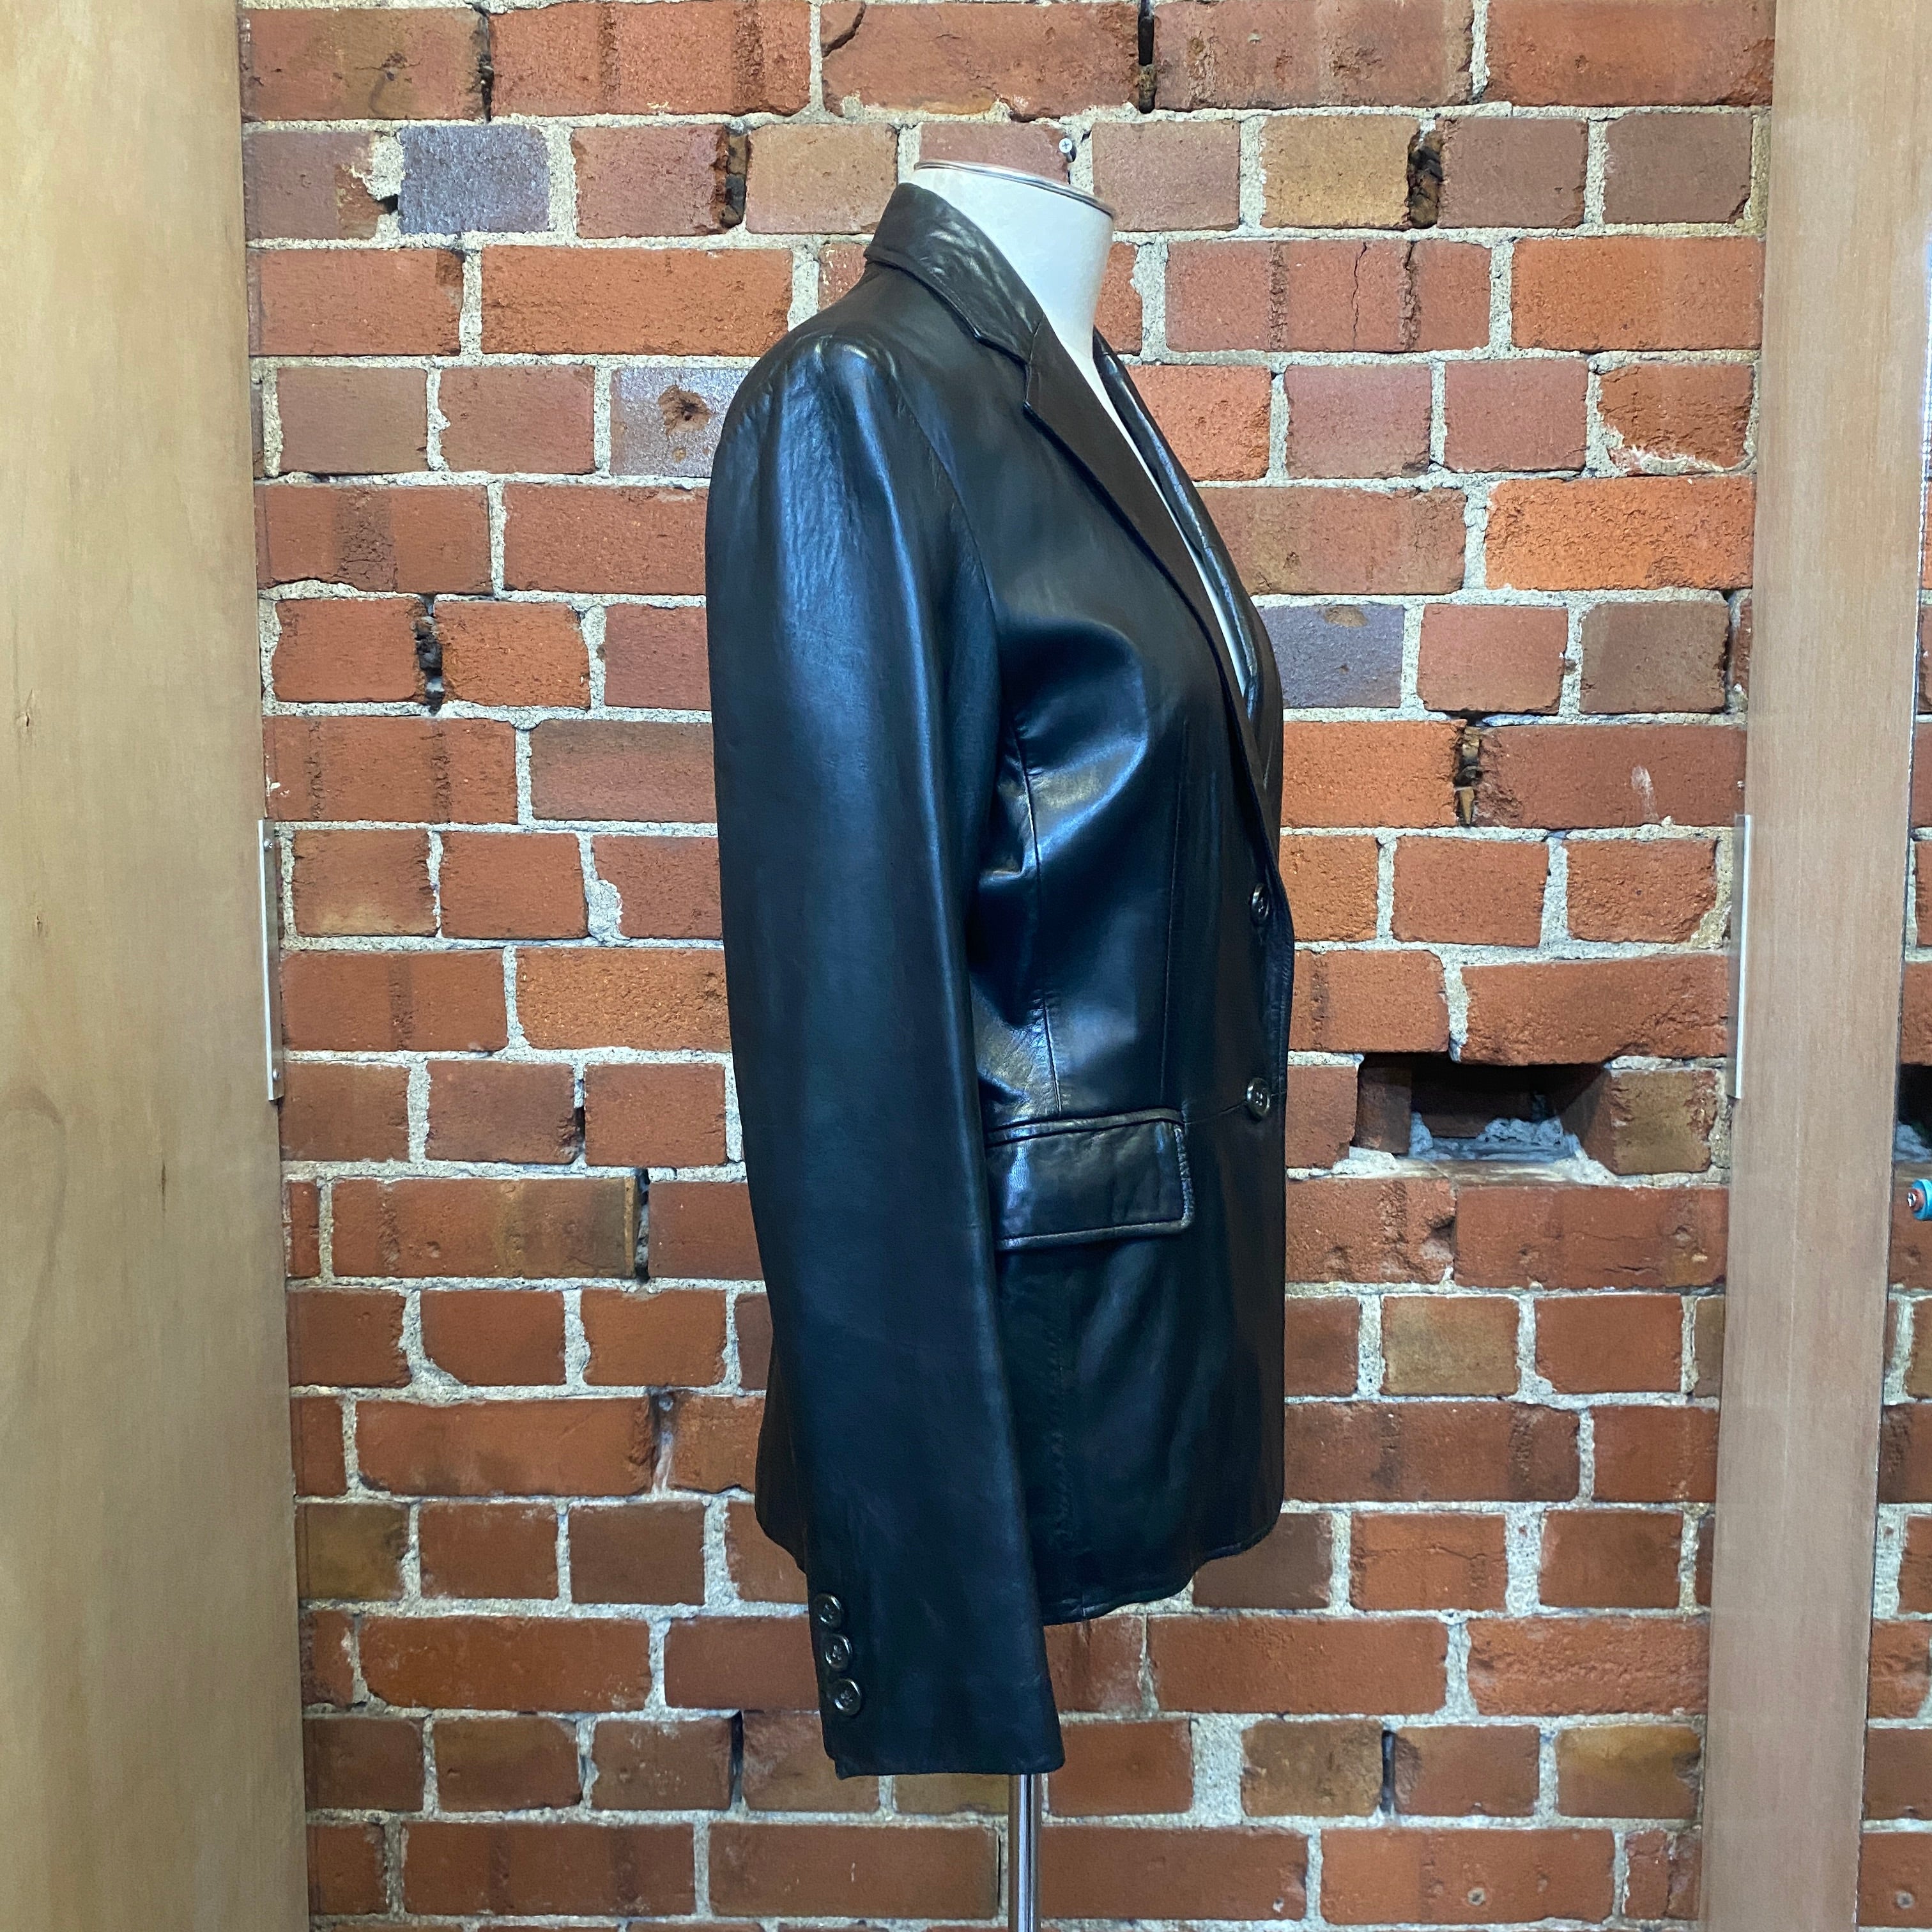 BANANA REPUBLIC leather jacket